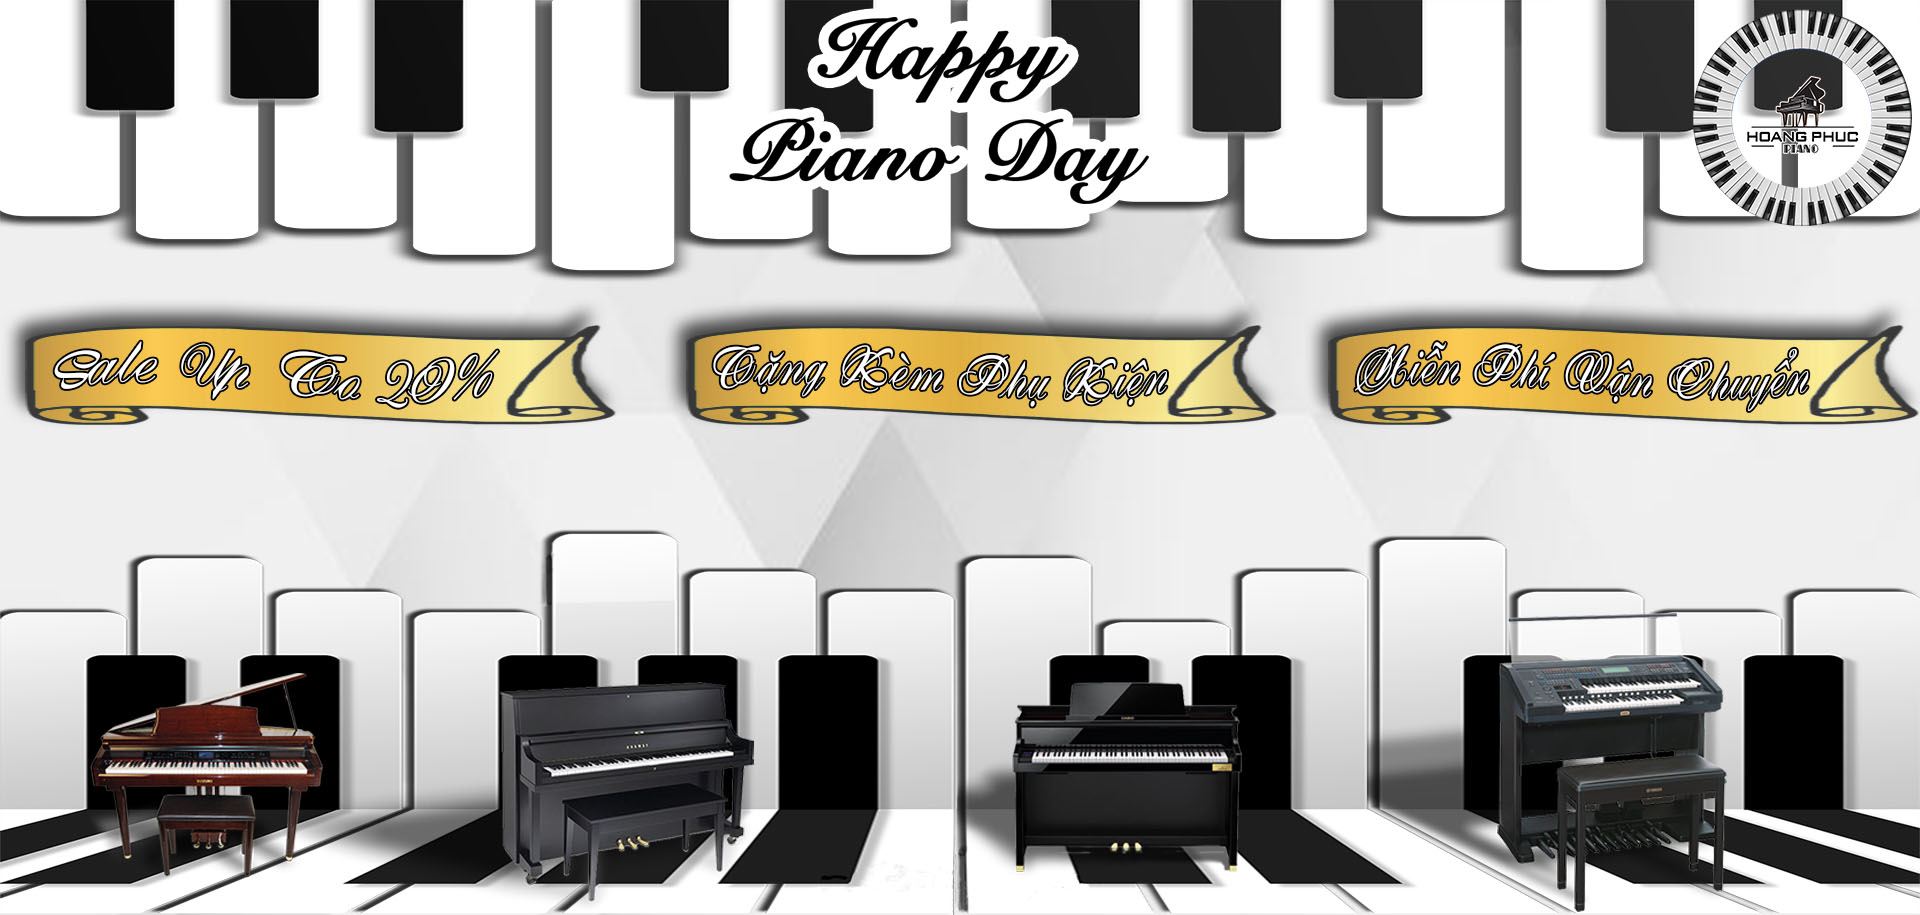 Sale Happy Piano Day